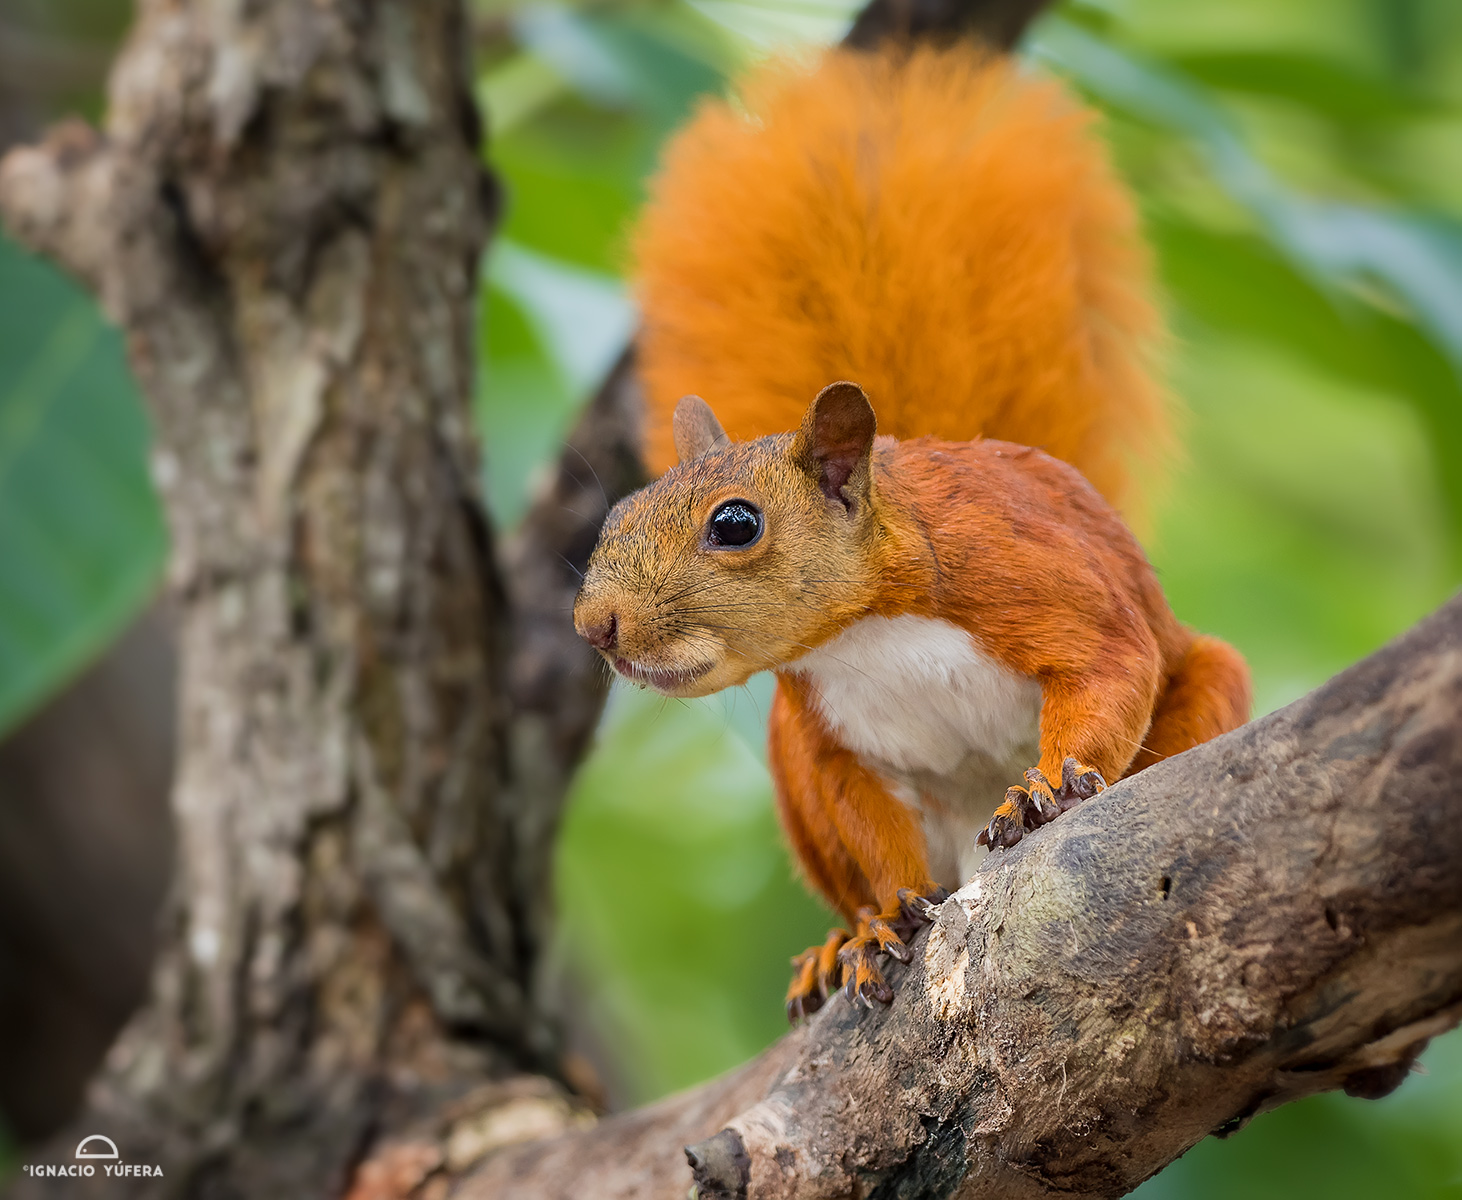 Red-tailed squirrel (Sciurus granatensis), Cartagena, Colombia